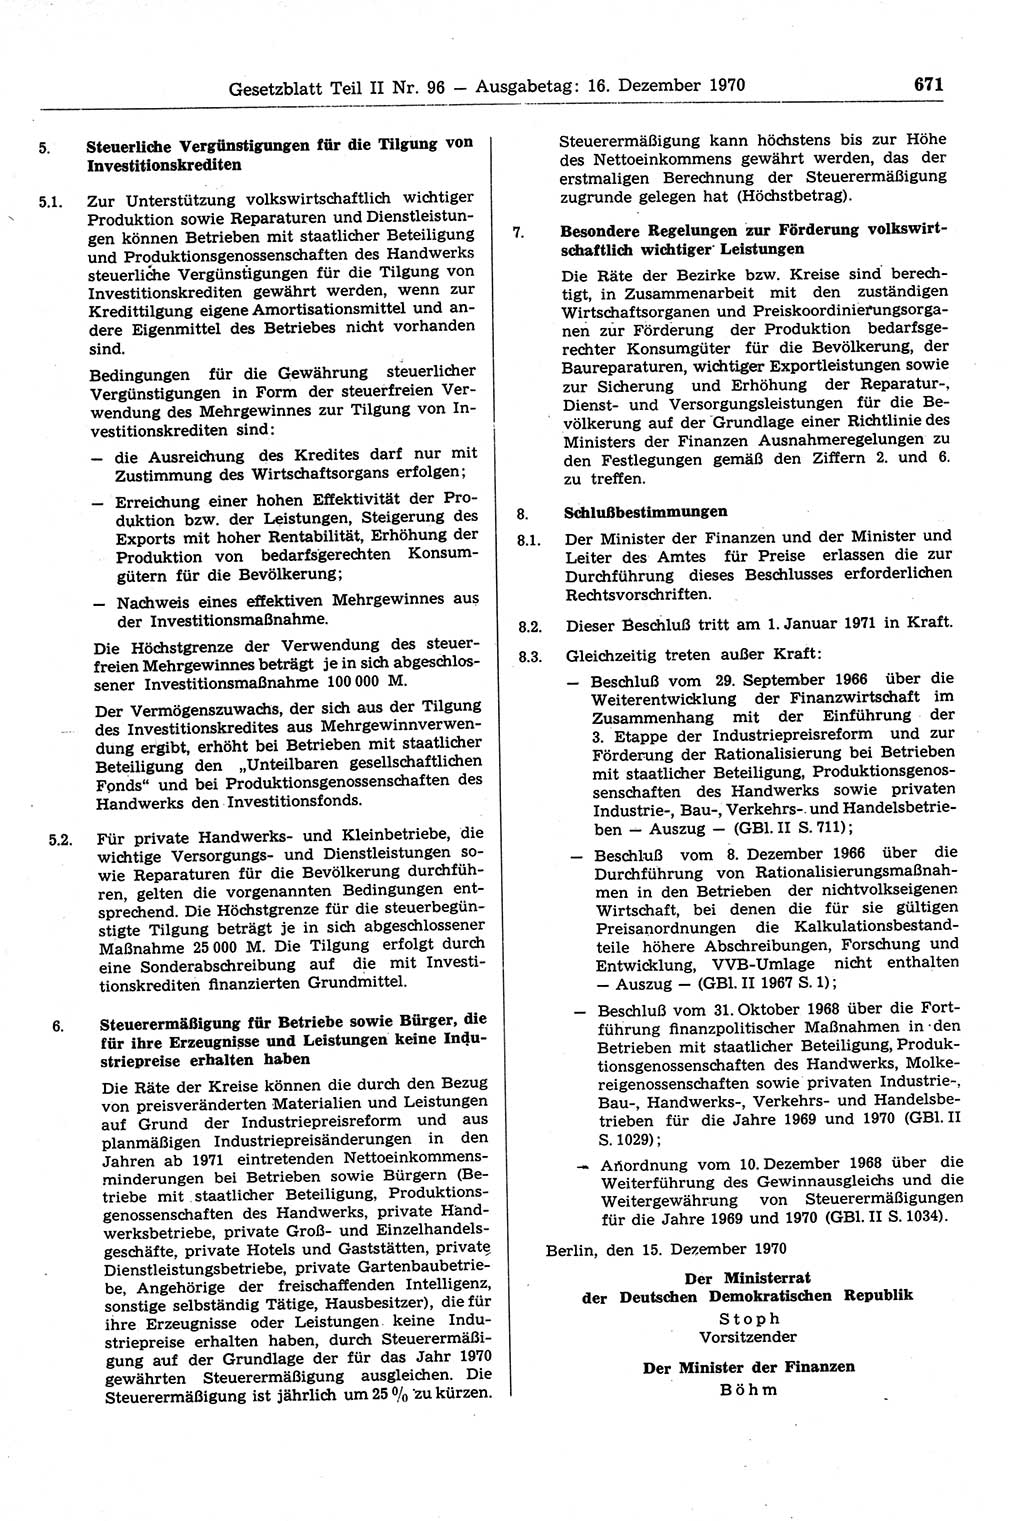 Gesetzblatt (GBl.) der Deutschen Demokratischen Republik (DDR) Teil ⅠⅠ 1970, Seite 671 (GBl. DDR ⅠⅠ 1970, S. 671)